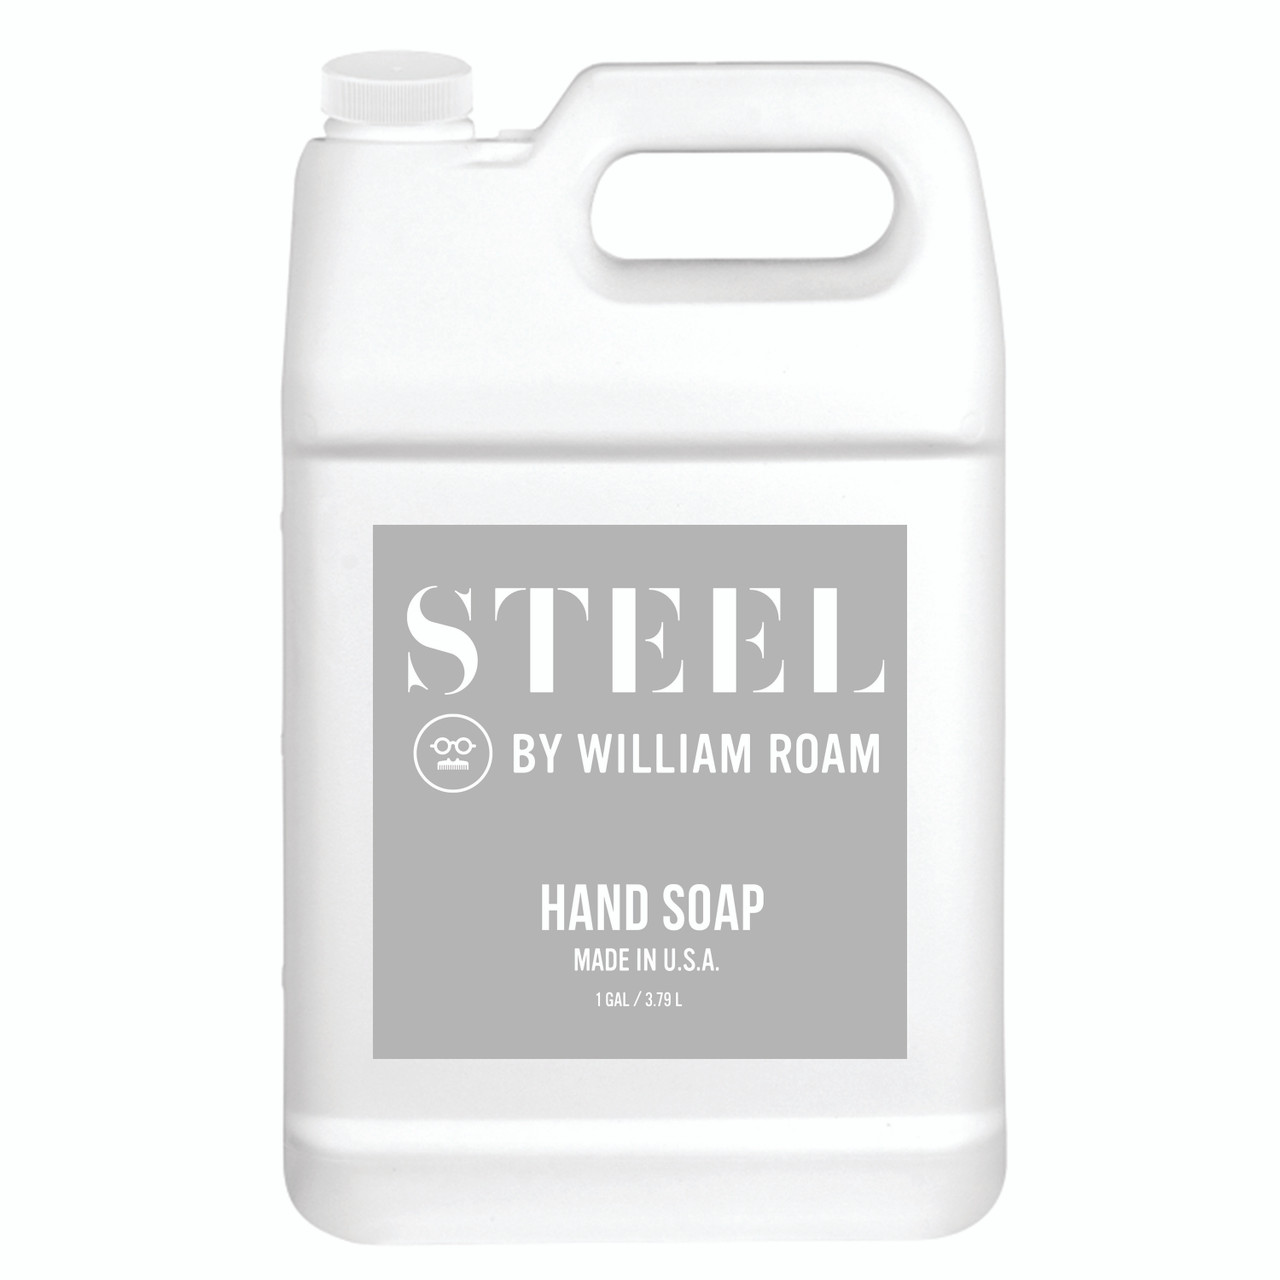 STEEL by William Roam Gallon Hand Soap - William Roam